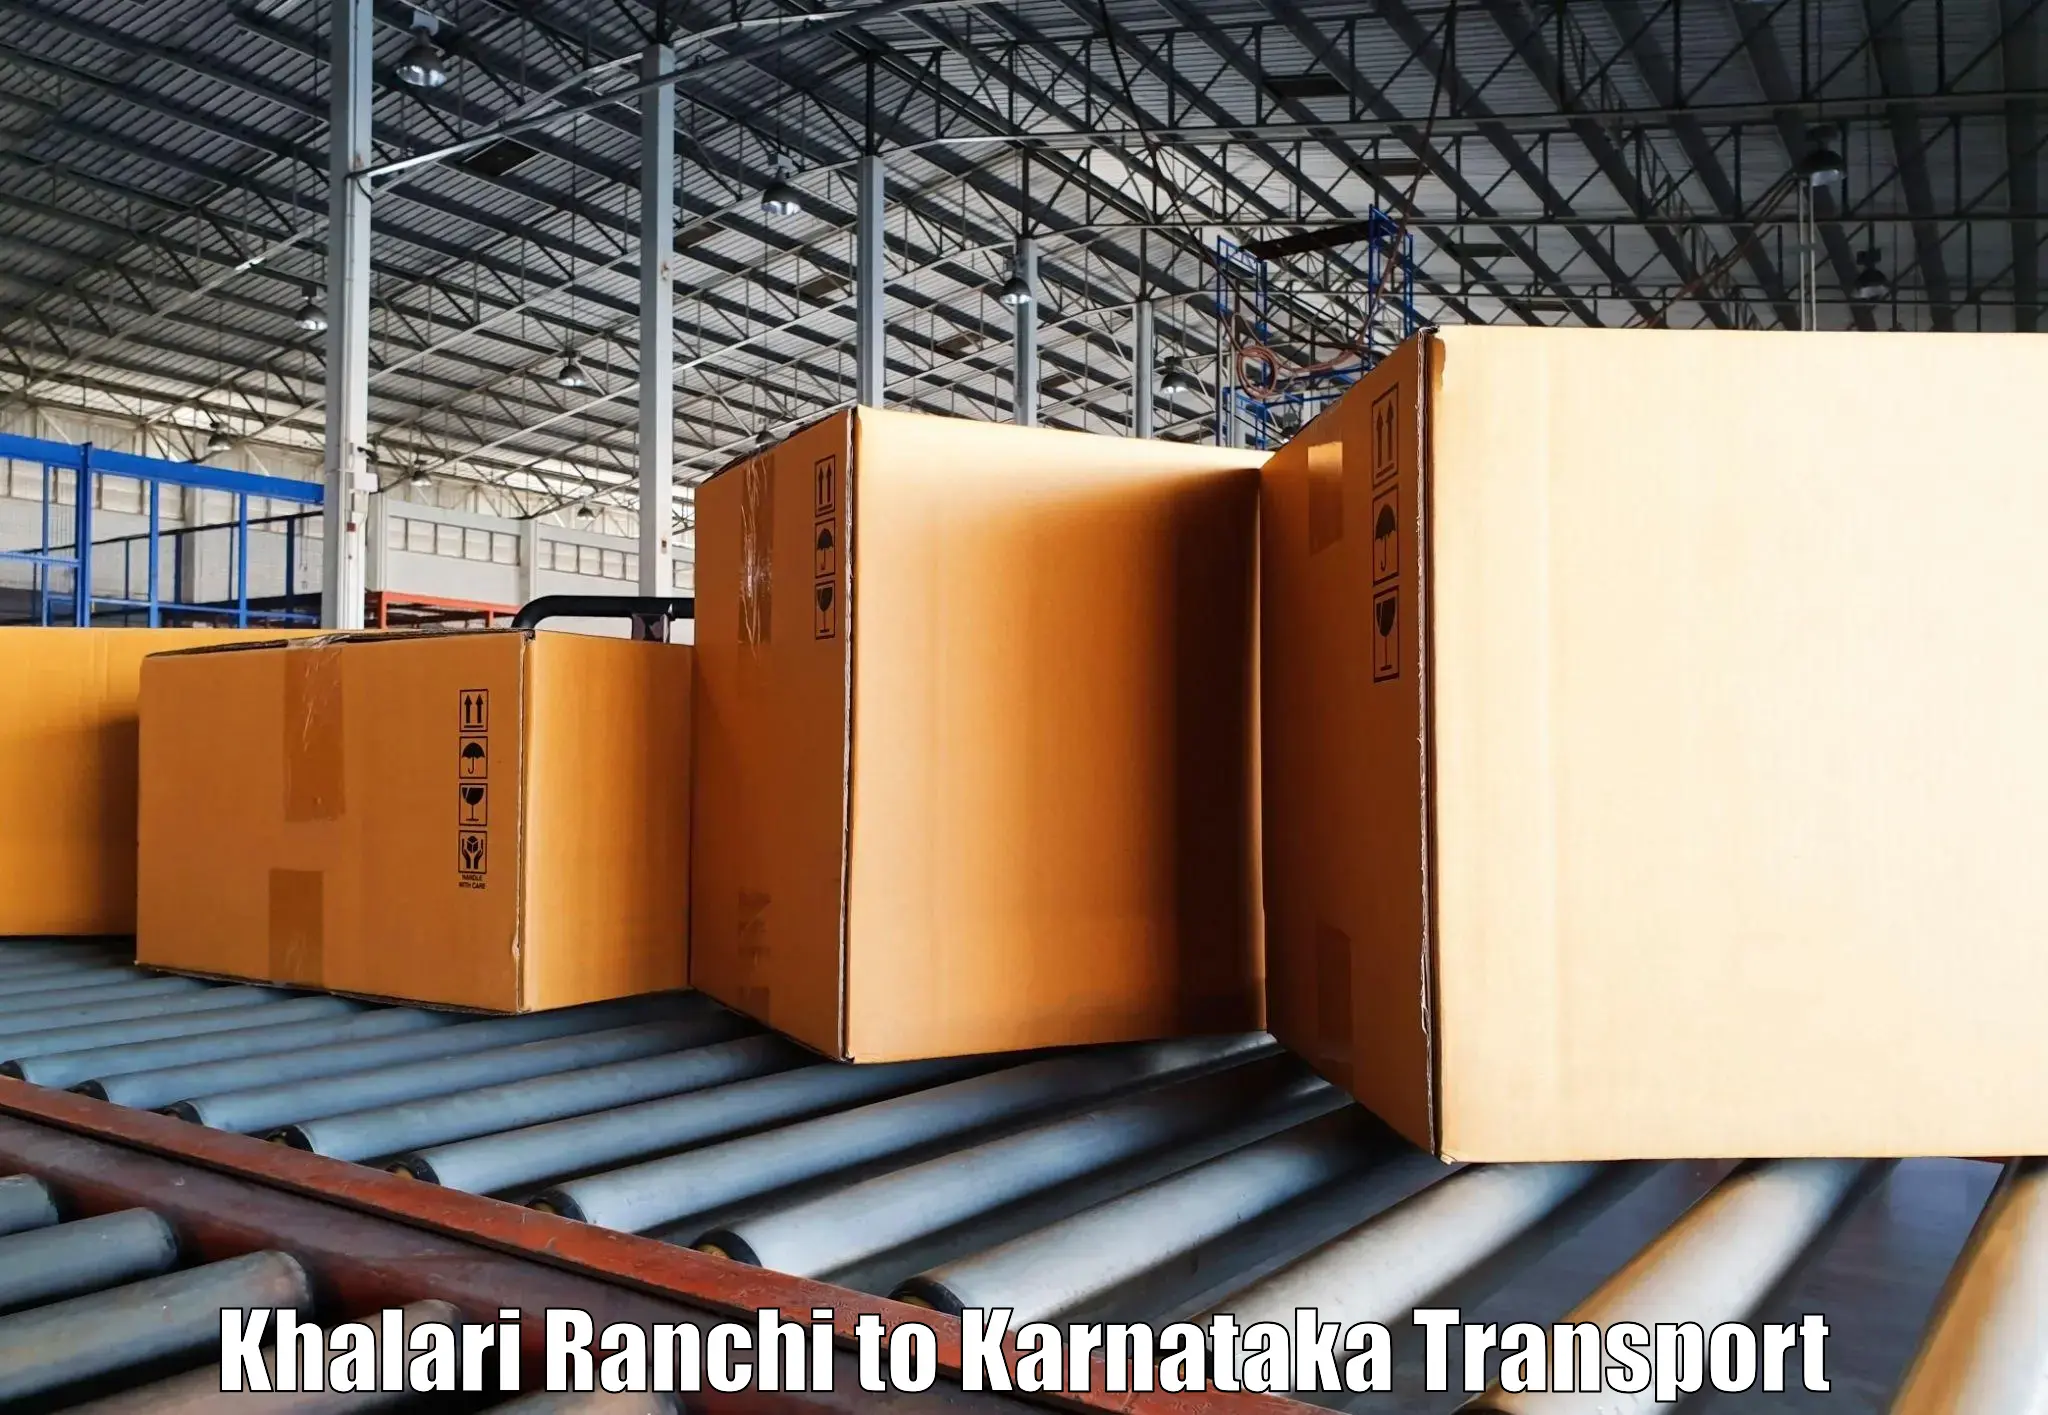 Parcel transport services Khalari Ranchi to Dharmasthala